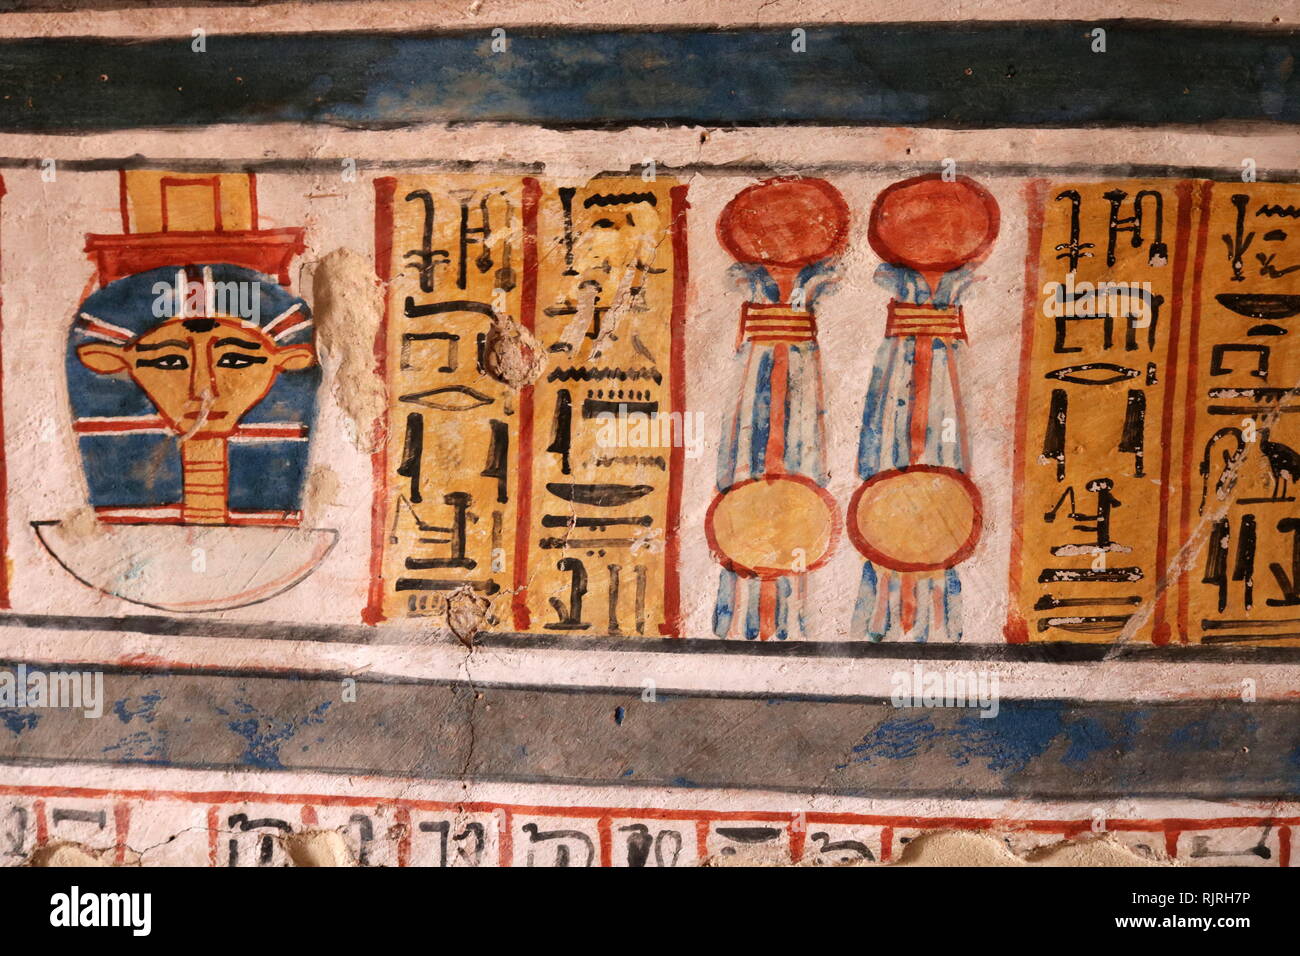 Pittura murale all'interno della tomba tebana di Roy (TT255), nell' Dra Abu el-Naga'. Esso fa parte della necropoli tebana, situato sulla sponda occidentale del Nilo di fronte a Luxor. Il sepolcro è il luogo di sepoltura degli antichi Egiziani ufficiale, Roy, vissuto alla fine del XVIII dinastia, durante il regno del re Horemheb. Roy era uno scriba regale nelle tenute di Horemheb e di Amon. Sua moglie che appare con lui nella tomba dipinti, è denominato Nebtawy, o 'Tawy' Foto Stock